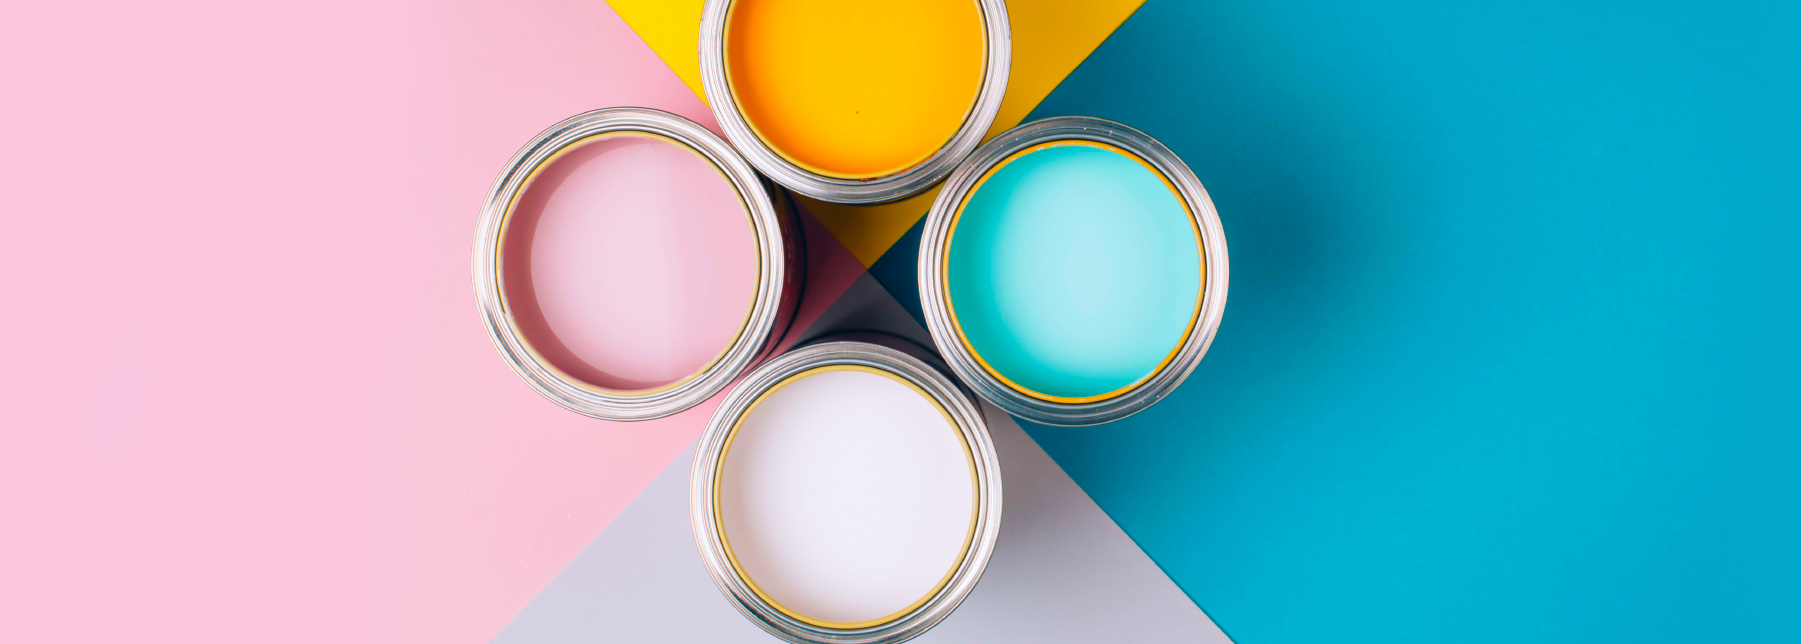 Aprenda A Escolher A Tinta Certa Para Pintar A Sua Casa 8382